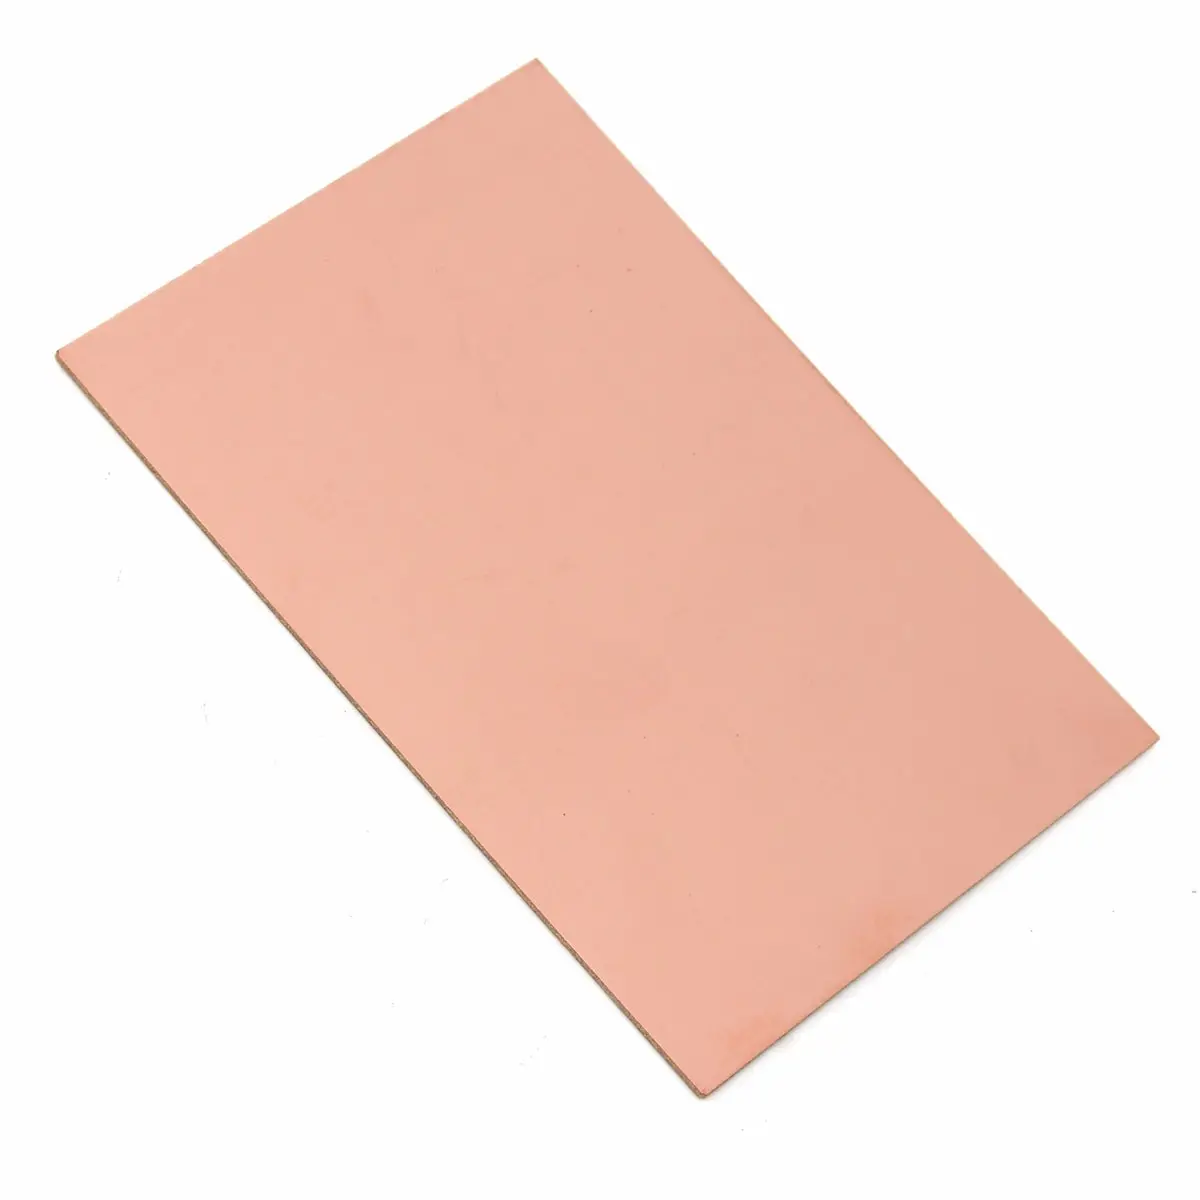 Placa de cobre pcb, laminado braçadeira um placa lateral 20x30cm 1.5mm ccl bakelite universal placa diy kit